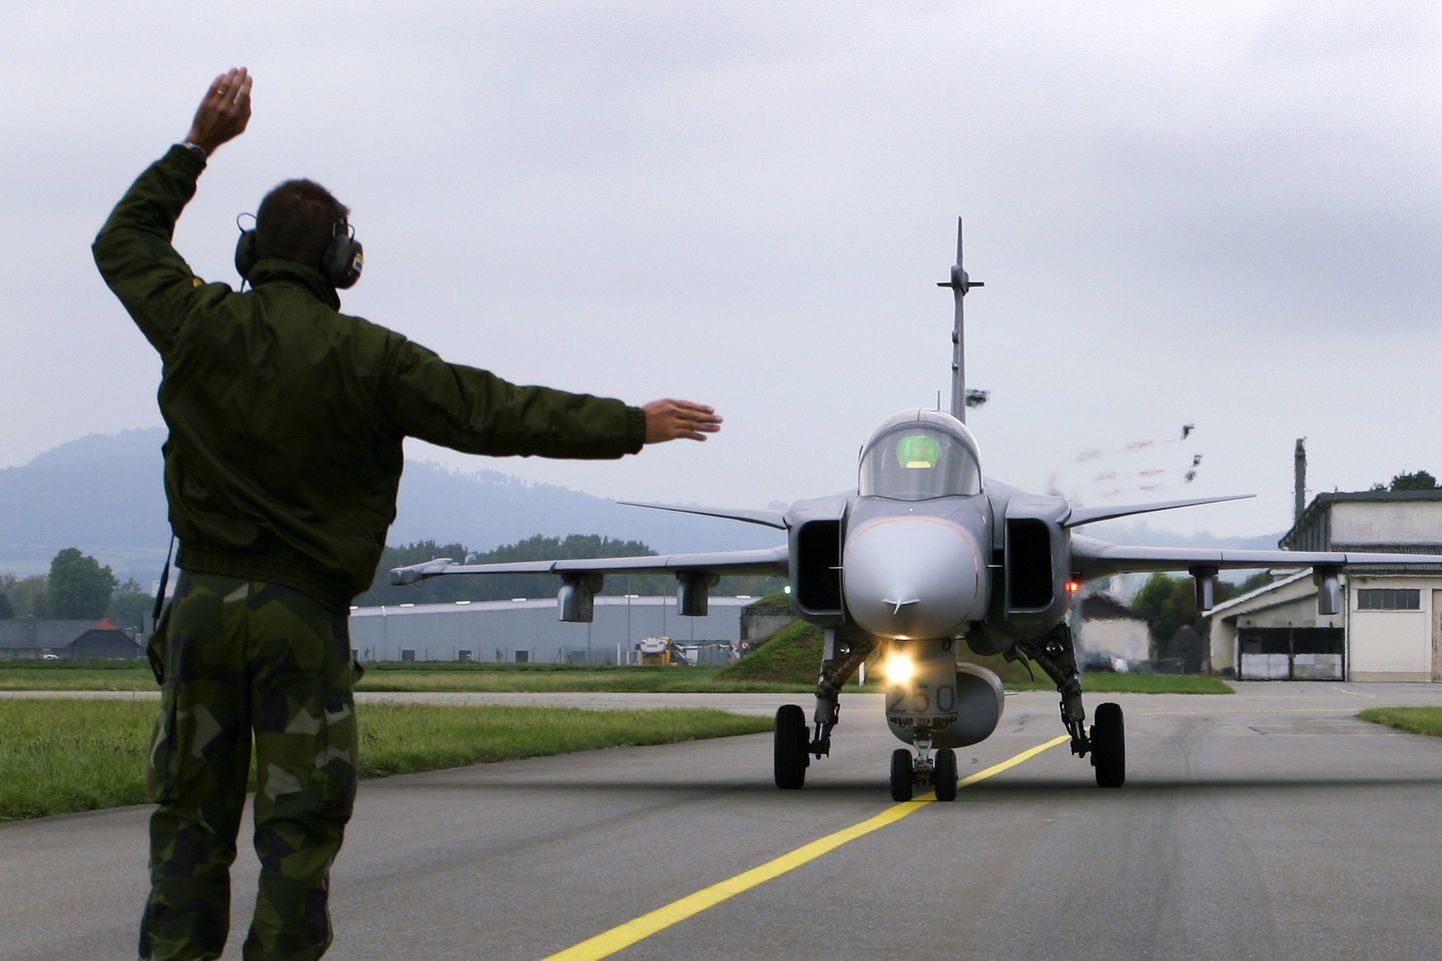 Kaitsekulutuste suurendamine on päevakorral isegi Rootsis. Kui Šveits tänavu loobus Rootsi hävitajate Saab Gripen C ostust ja nende arendusse panustamisest, teatas Rootsi, et leiab ise raha uue põlvkonna hävitajate arendustööks. Pildil Saab Gripen C Payerne lennuväljal Šveitsis.